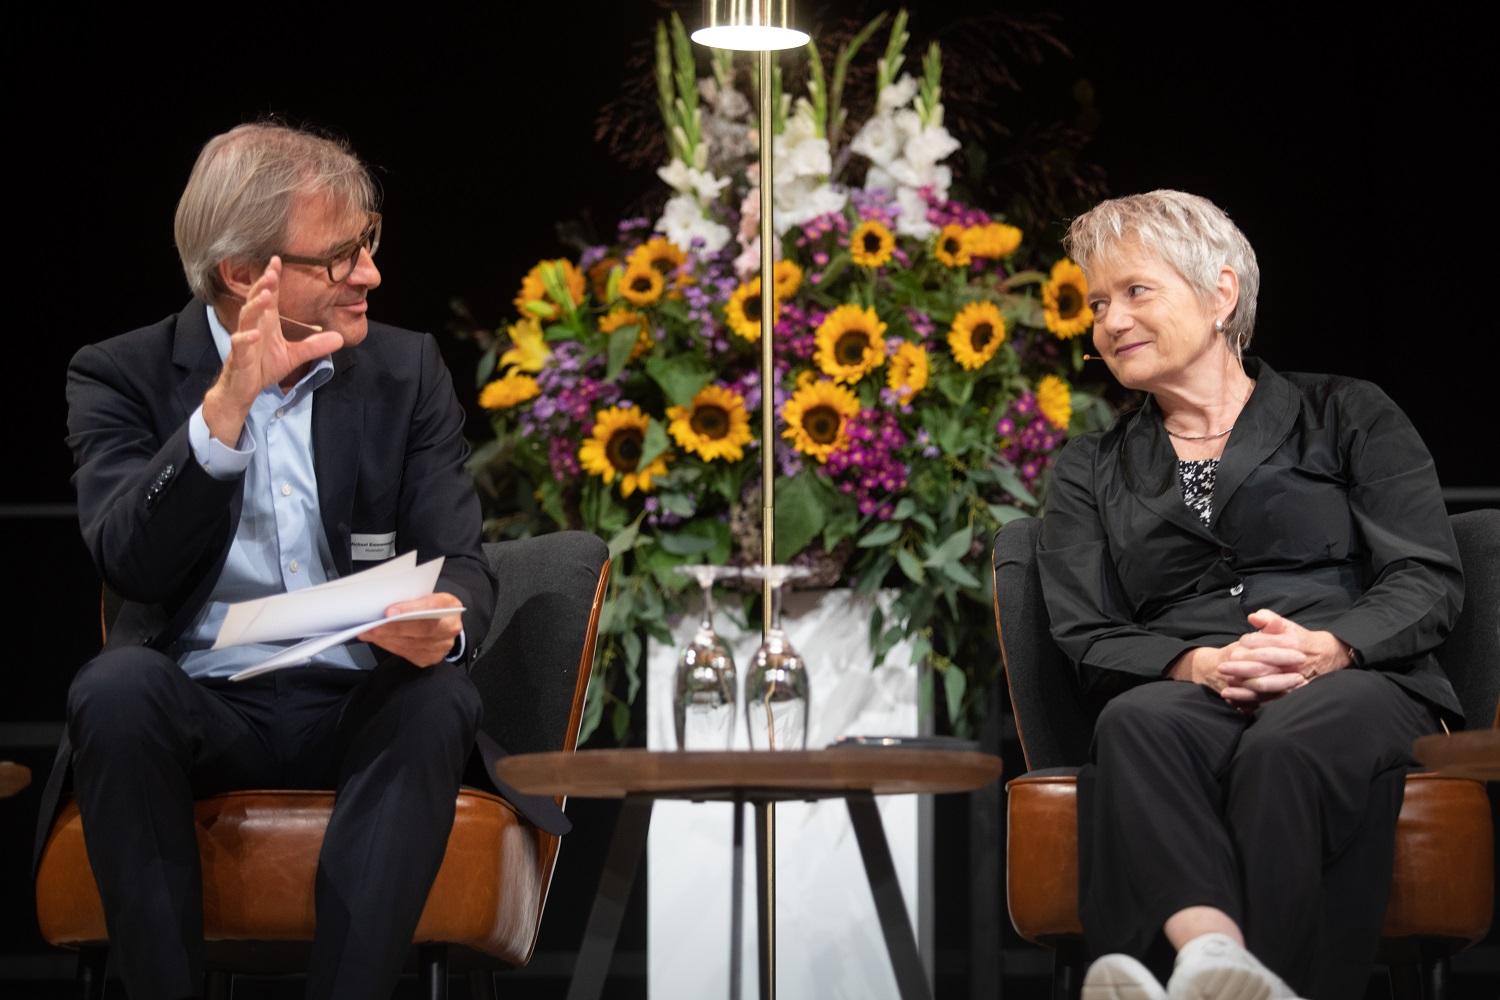 Bühnenszene. Moderator Michael Emmenegger diskutiert mit Regierungspräsidentin Jacqueline Fehr. Im Hintergrund ist ein grosses Blumengesteck zu sehen.